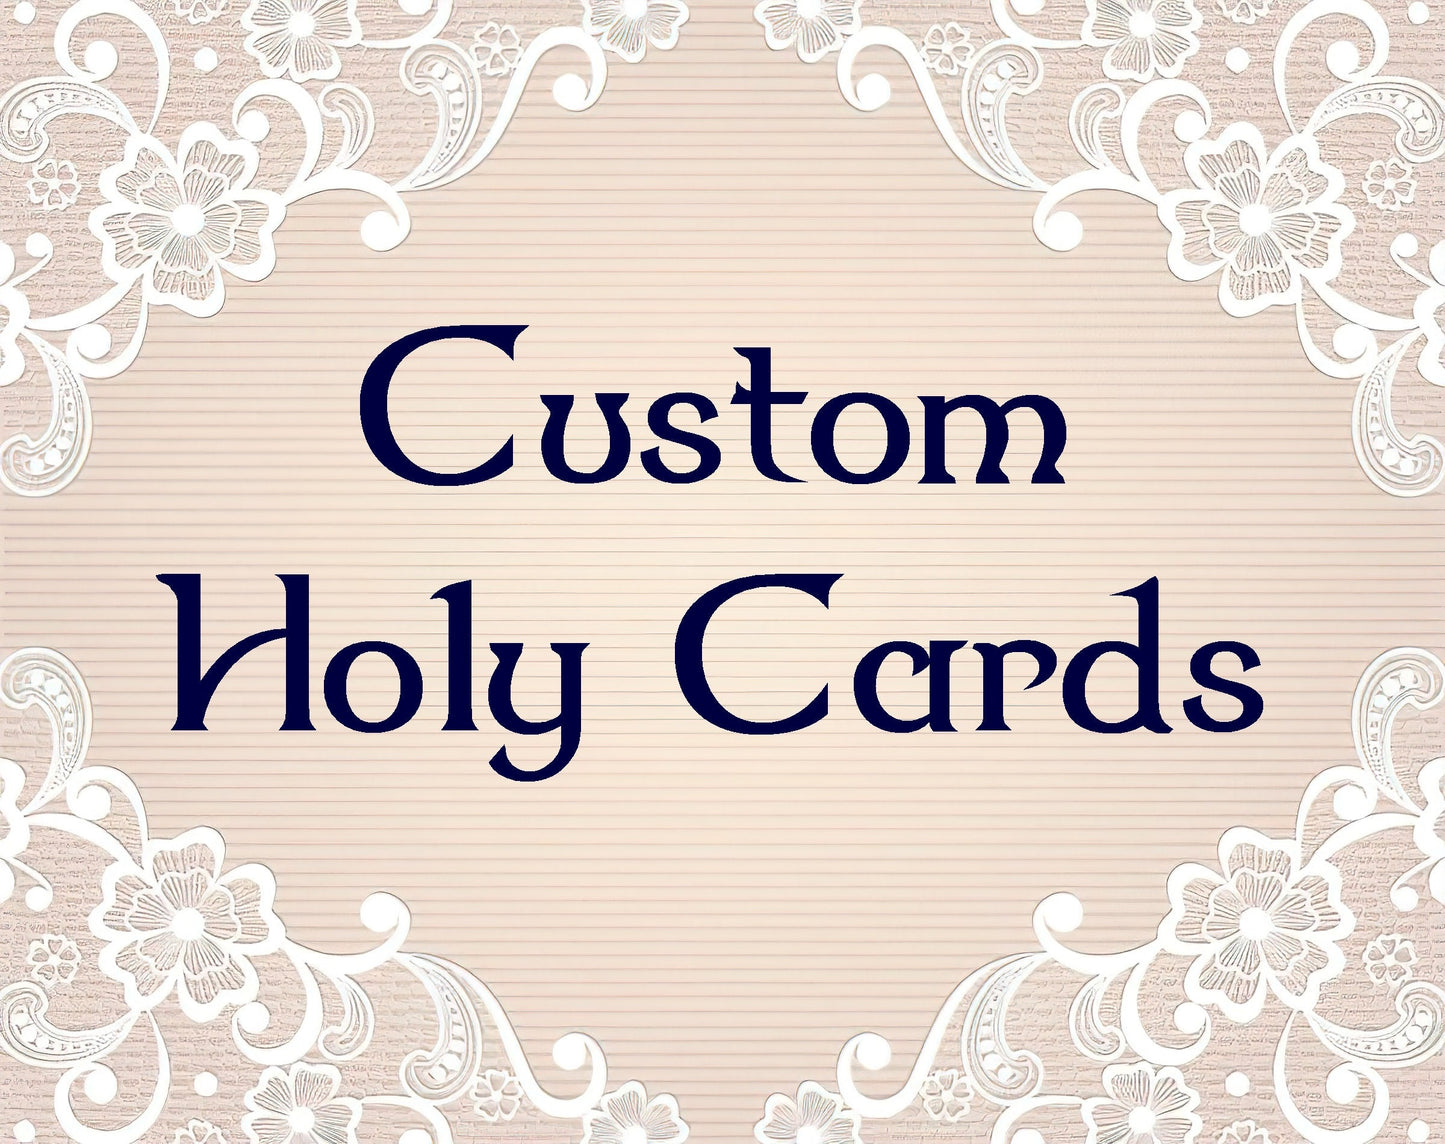 Custom Holy Cards!